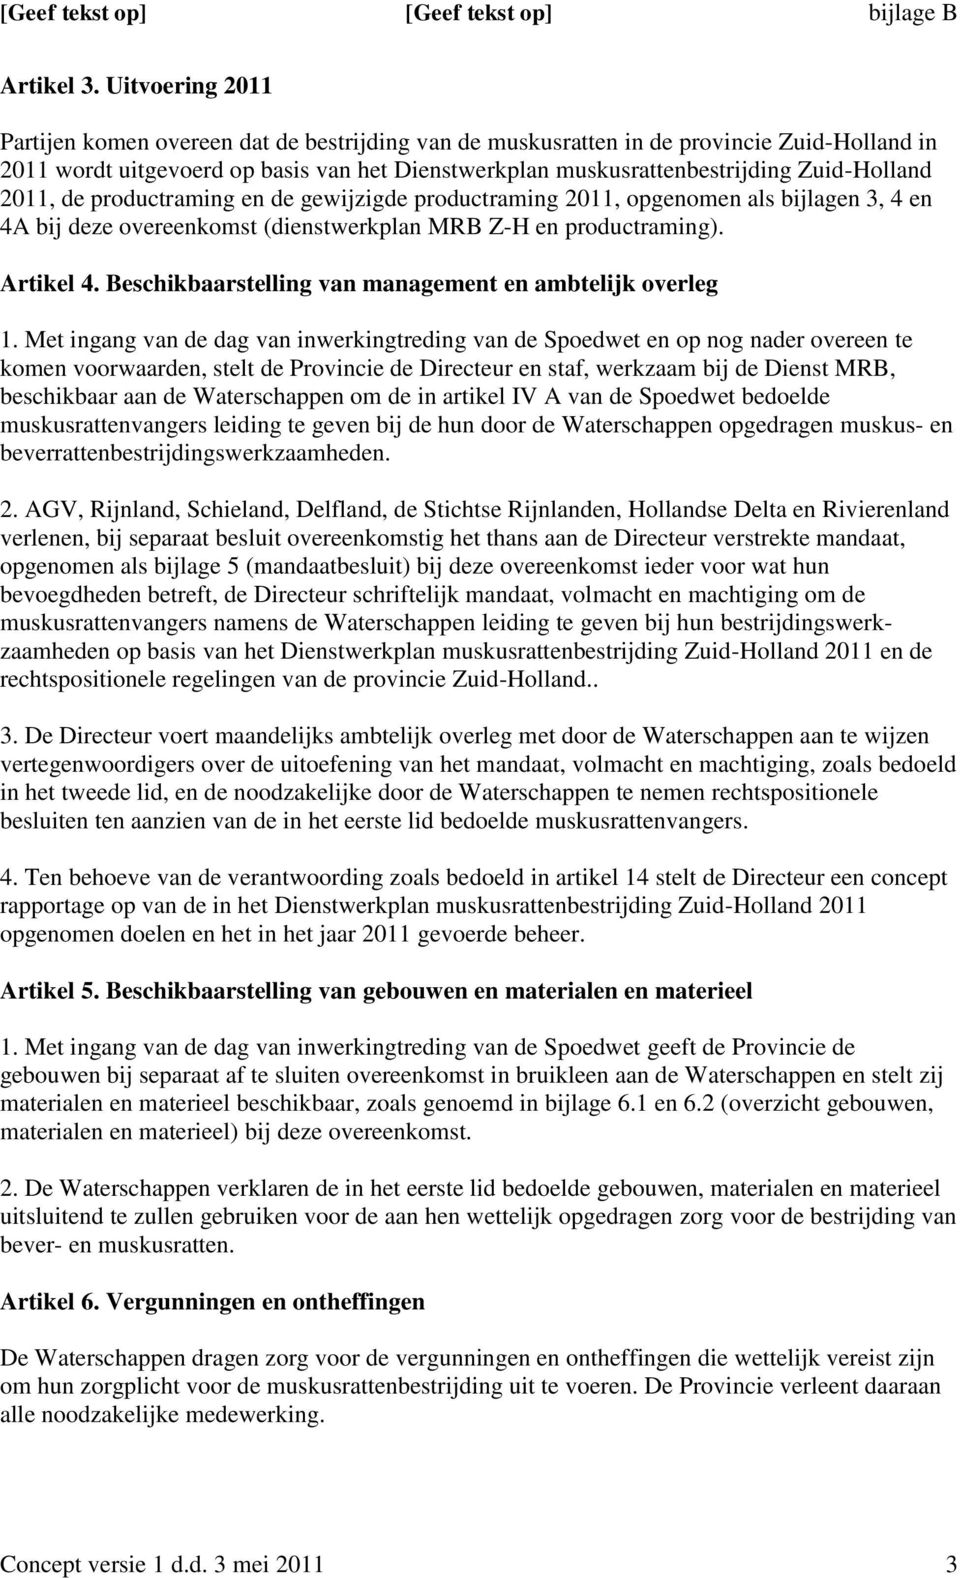 Zuid-Holland 2011, de productraming en de gewijzigde productraming 2011, opgenomen als bijlagen 3, 4 en 4A bij deze overeenkomst (dienstwerkplan MRB Z-H en productraming). Artikel 4.